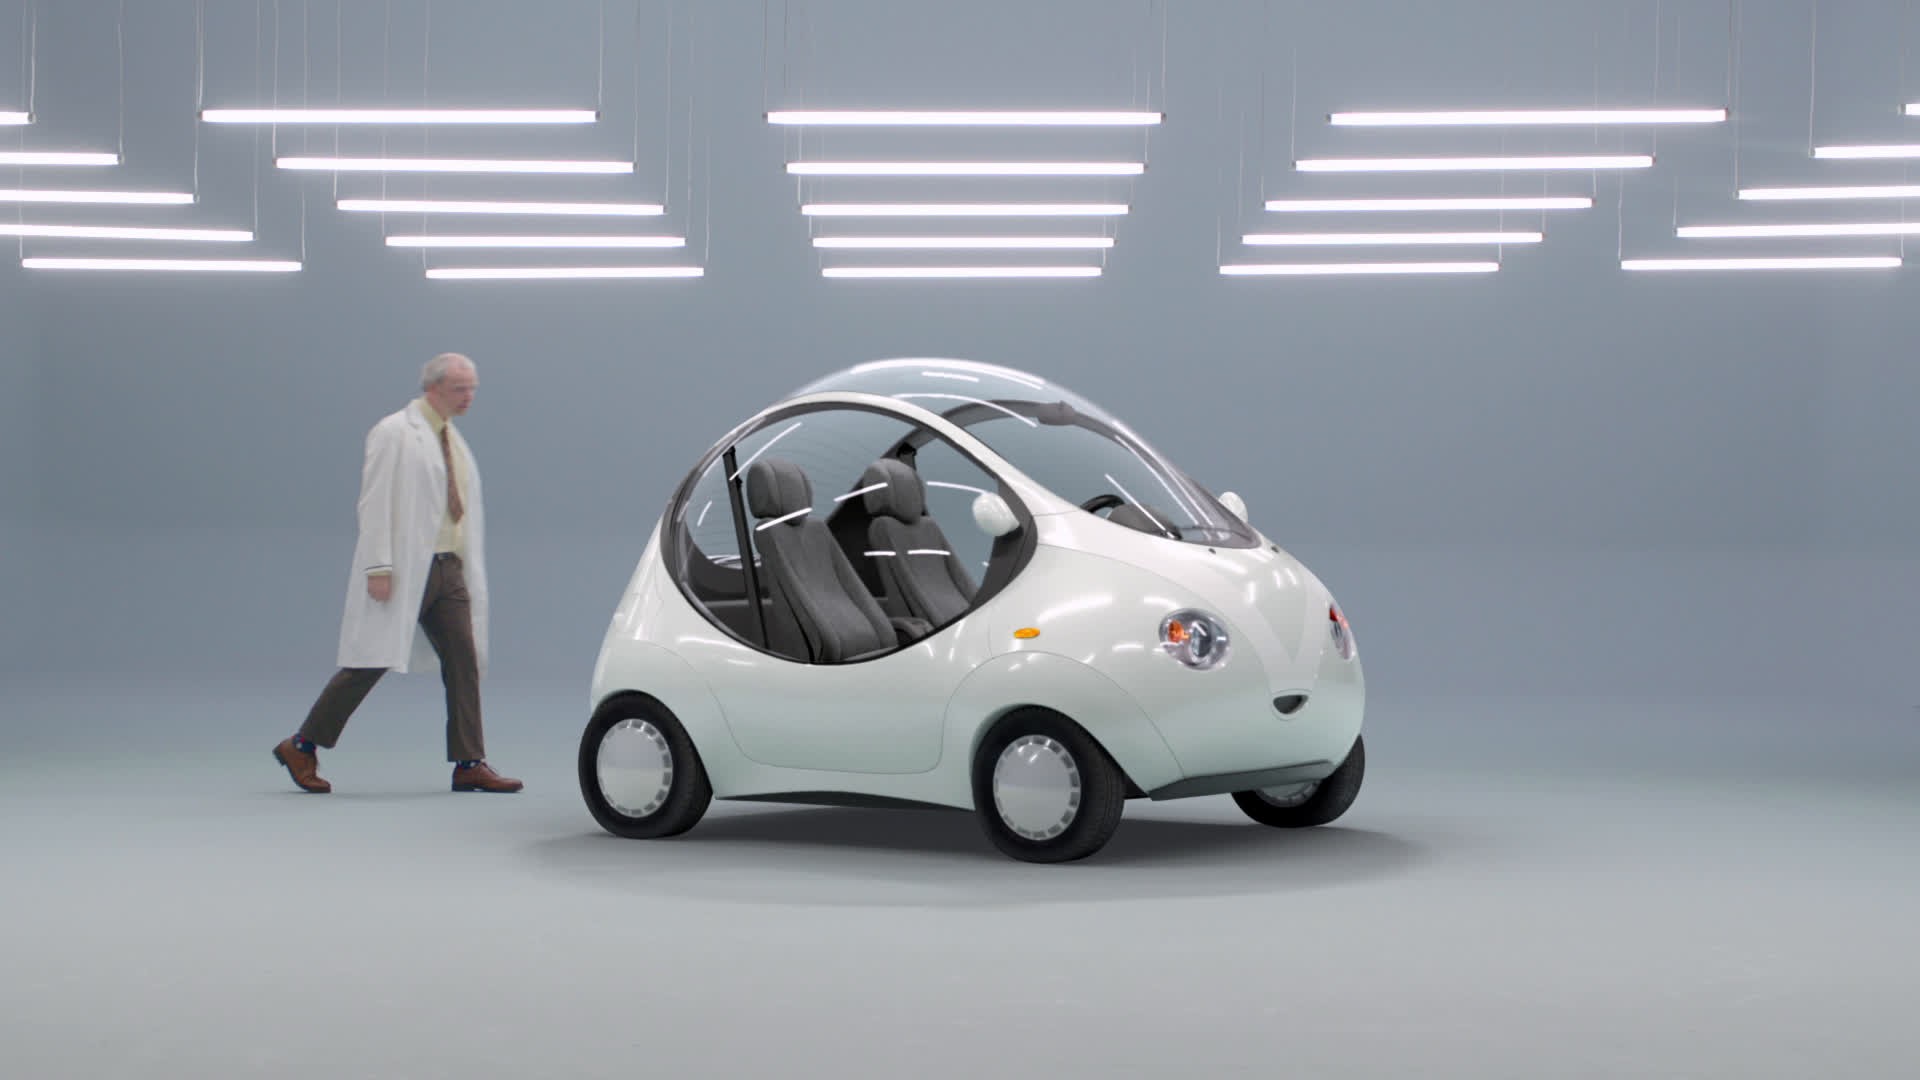 The Autonomous Car